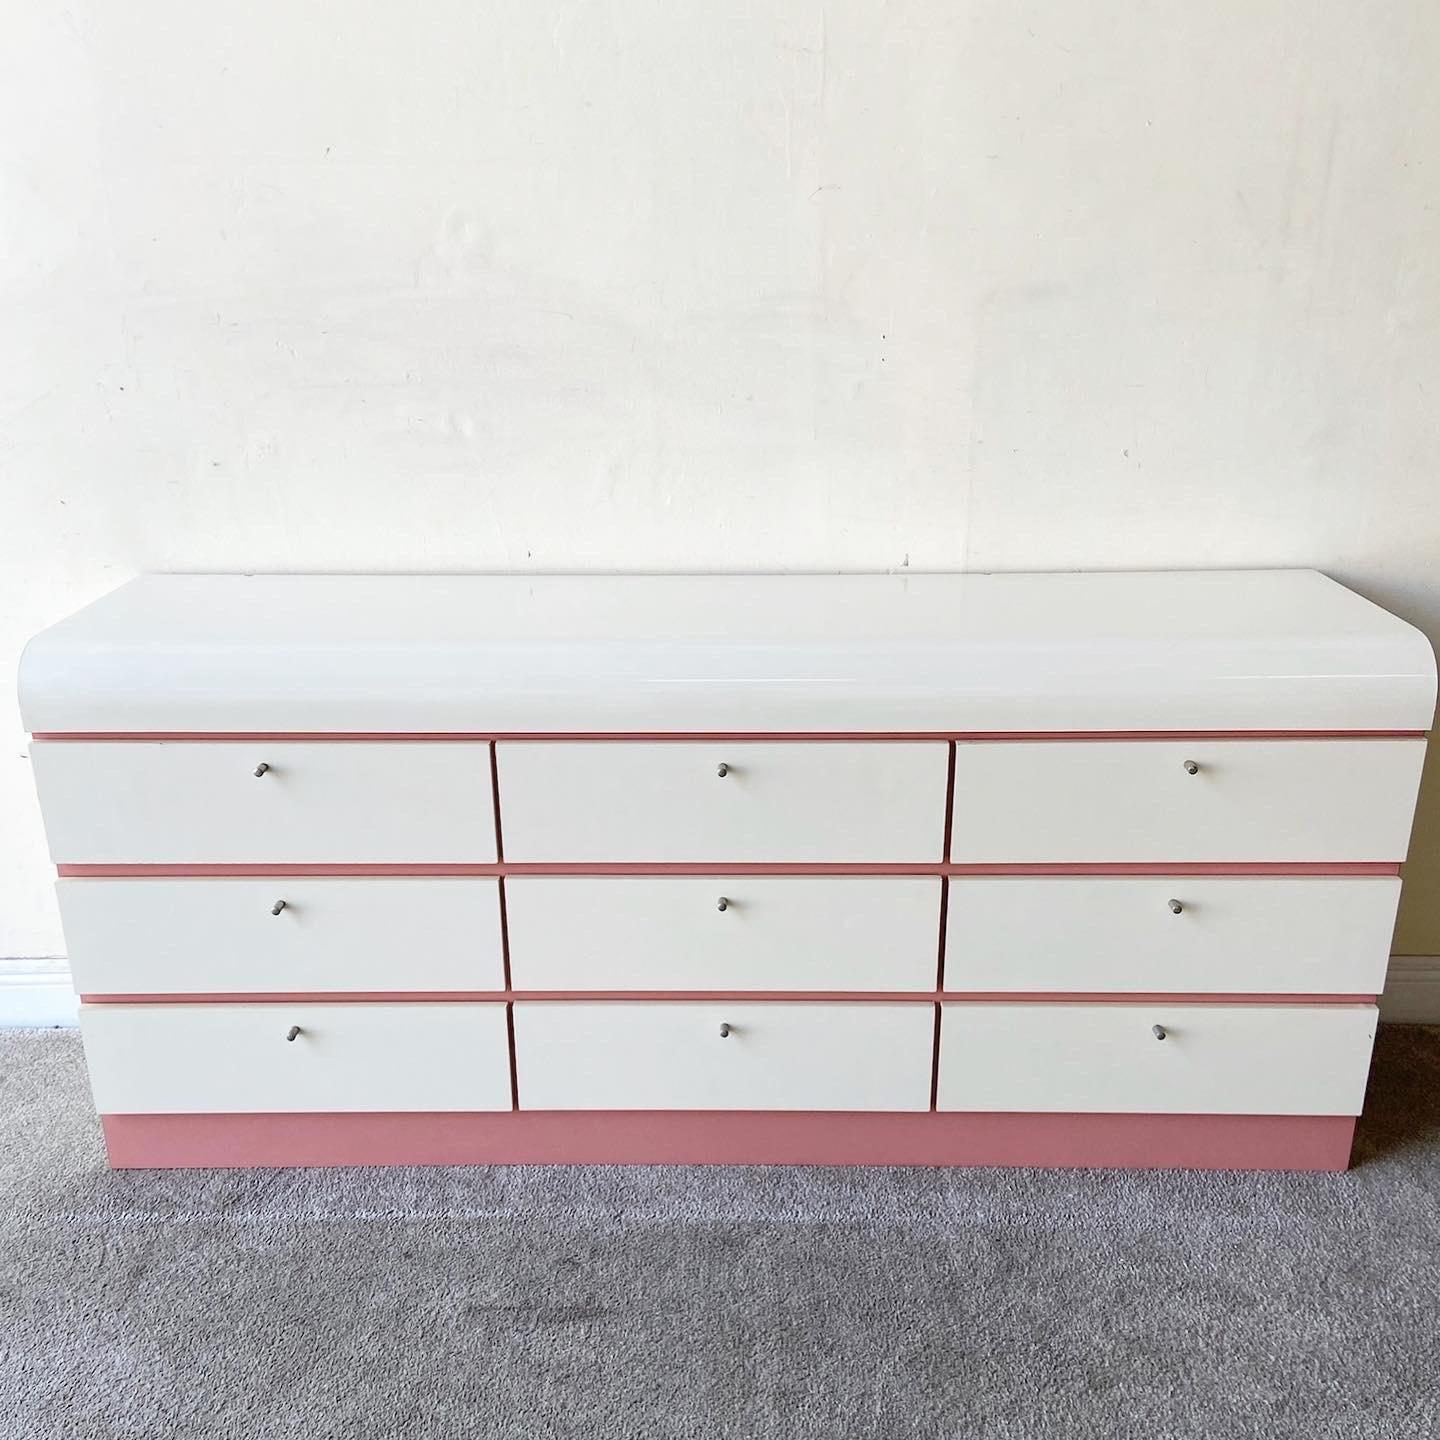 Postmodern Pink & White Lacquer Laminate Waterfall Lowboy Dresser, 9 Drawers 2